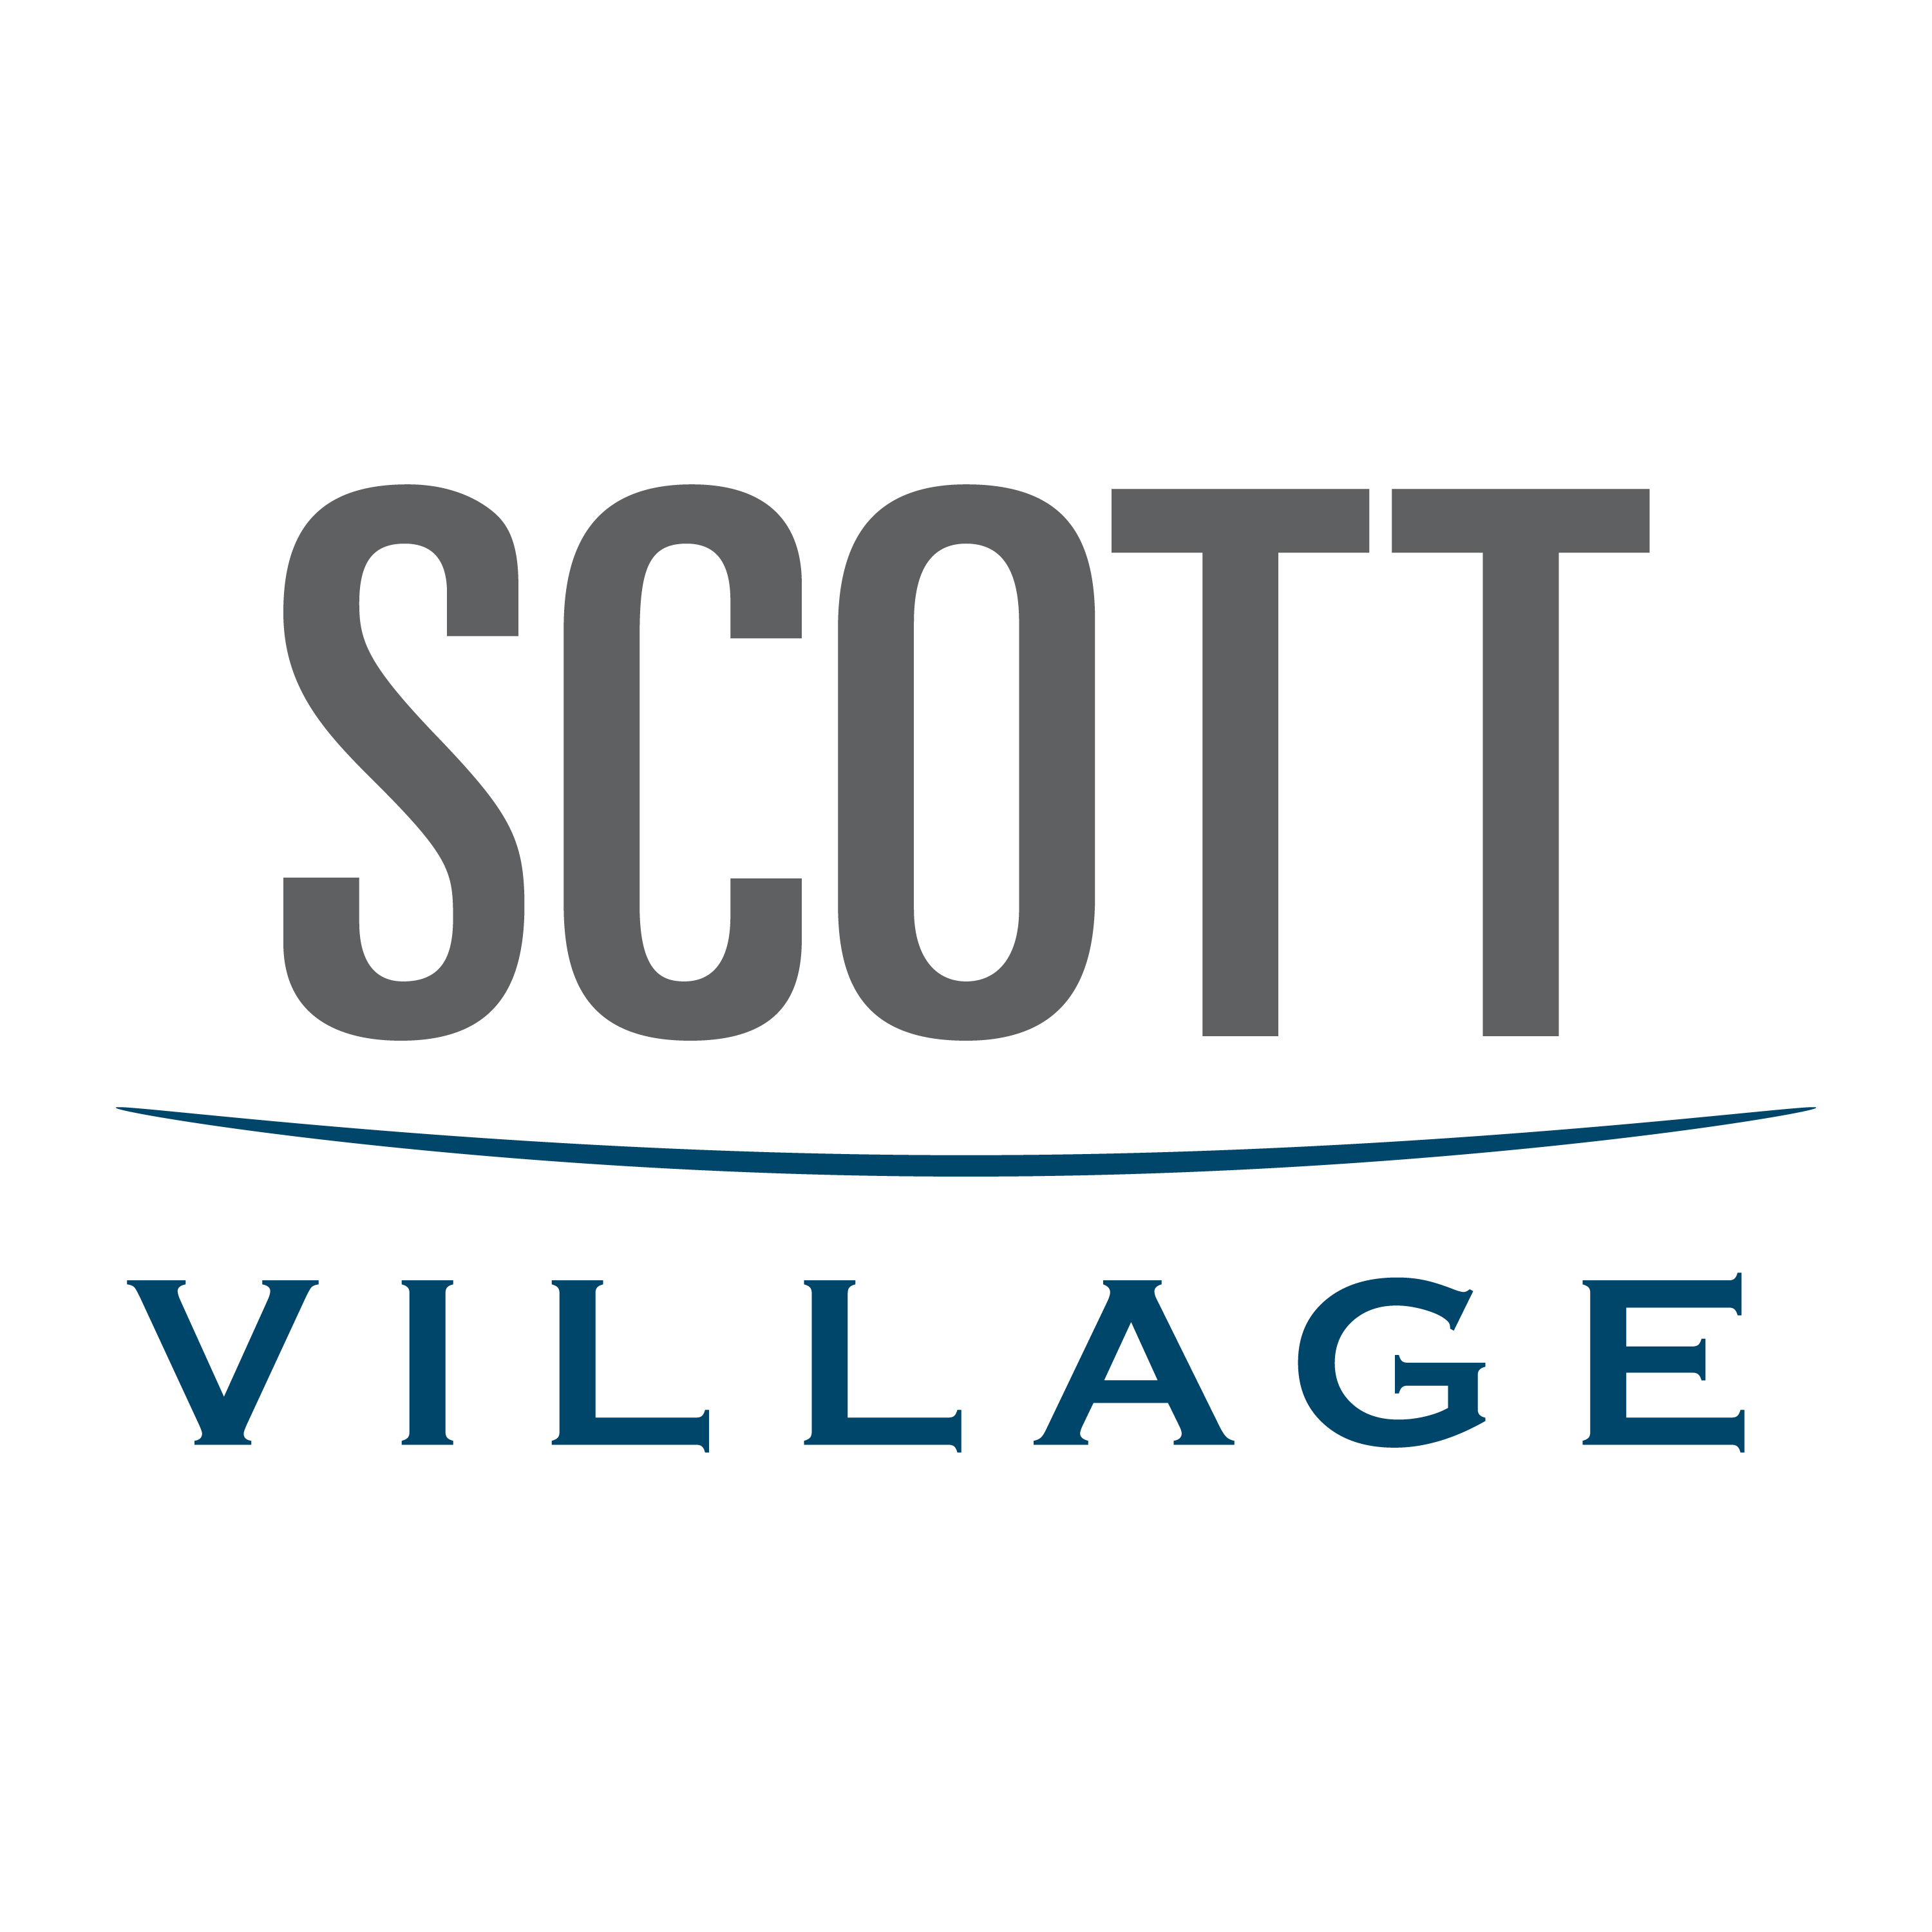 Scott Village